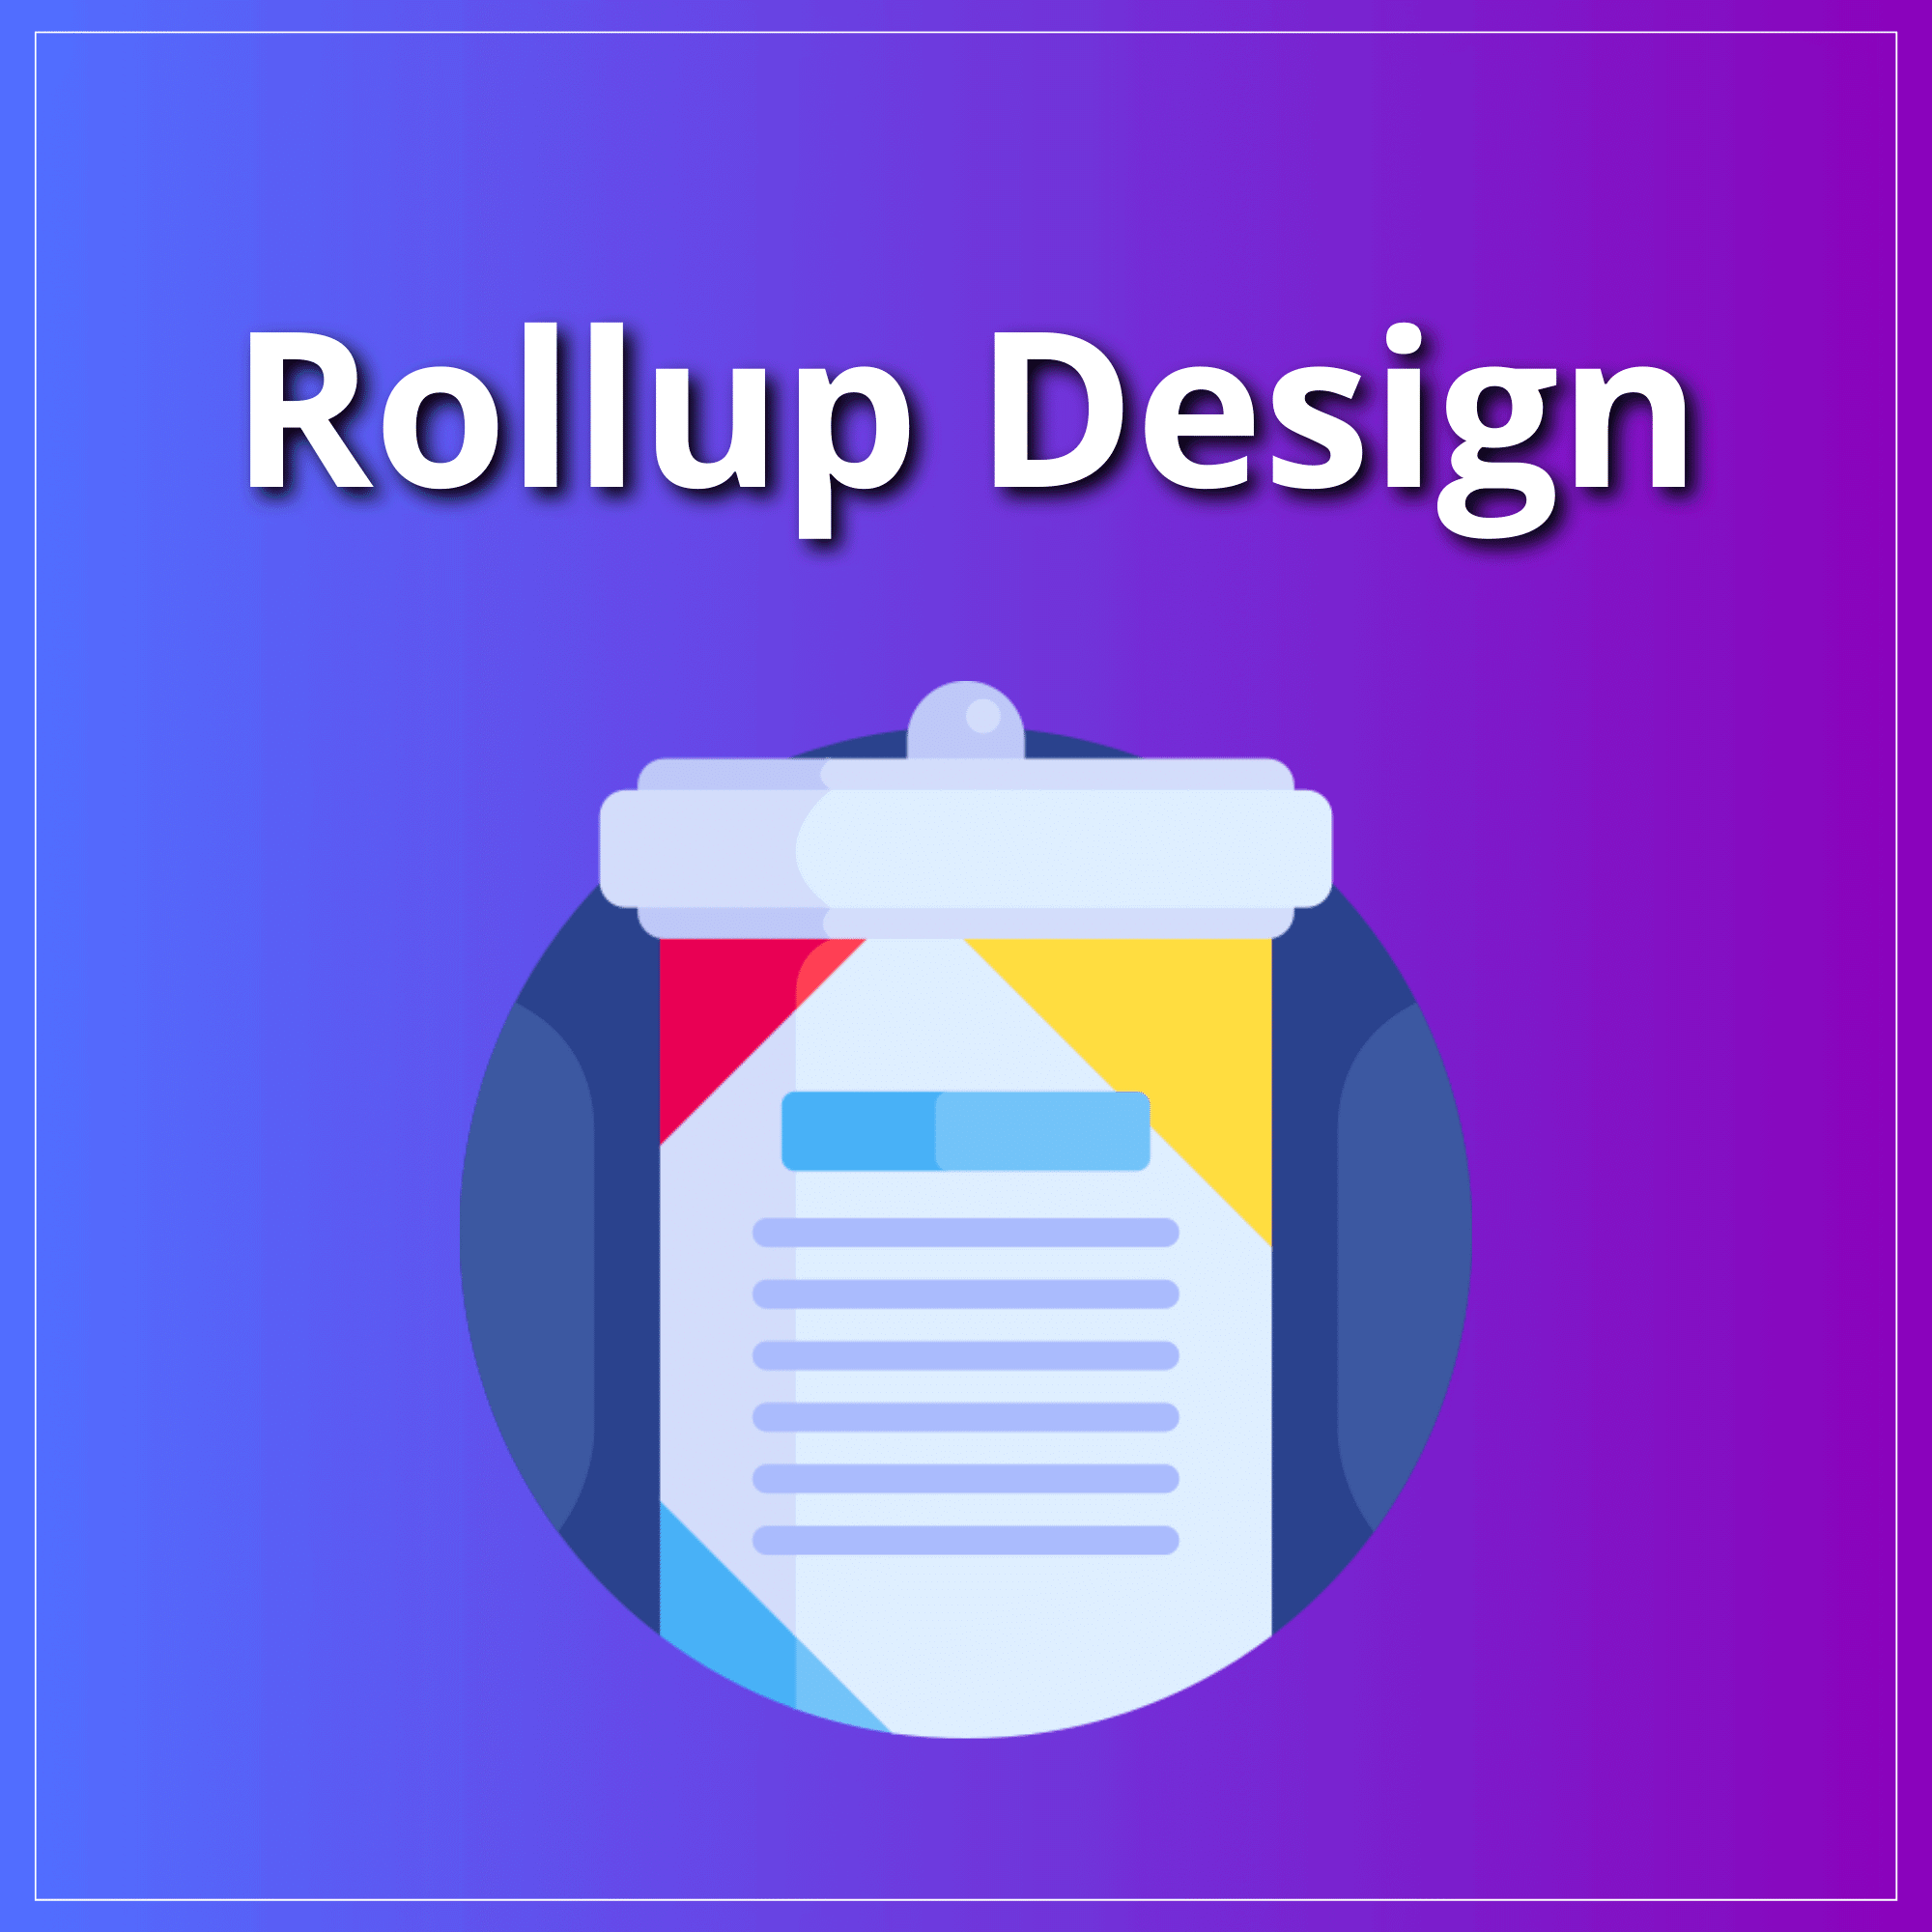 Rollup Design